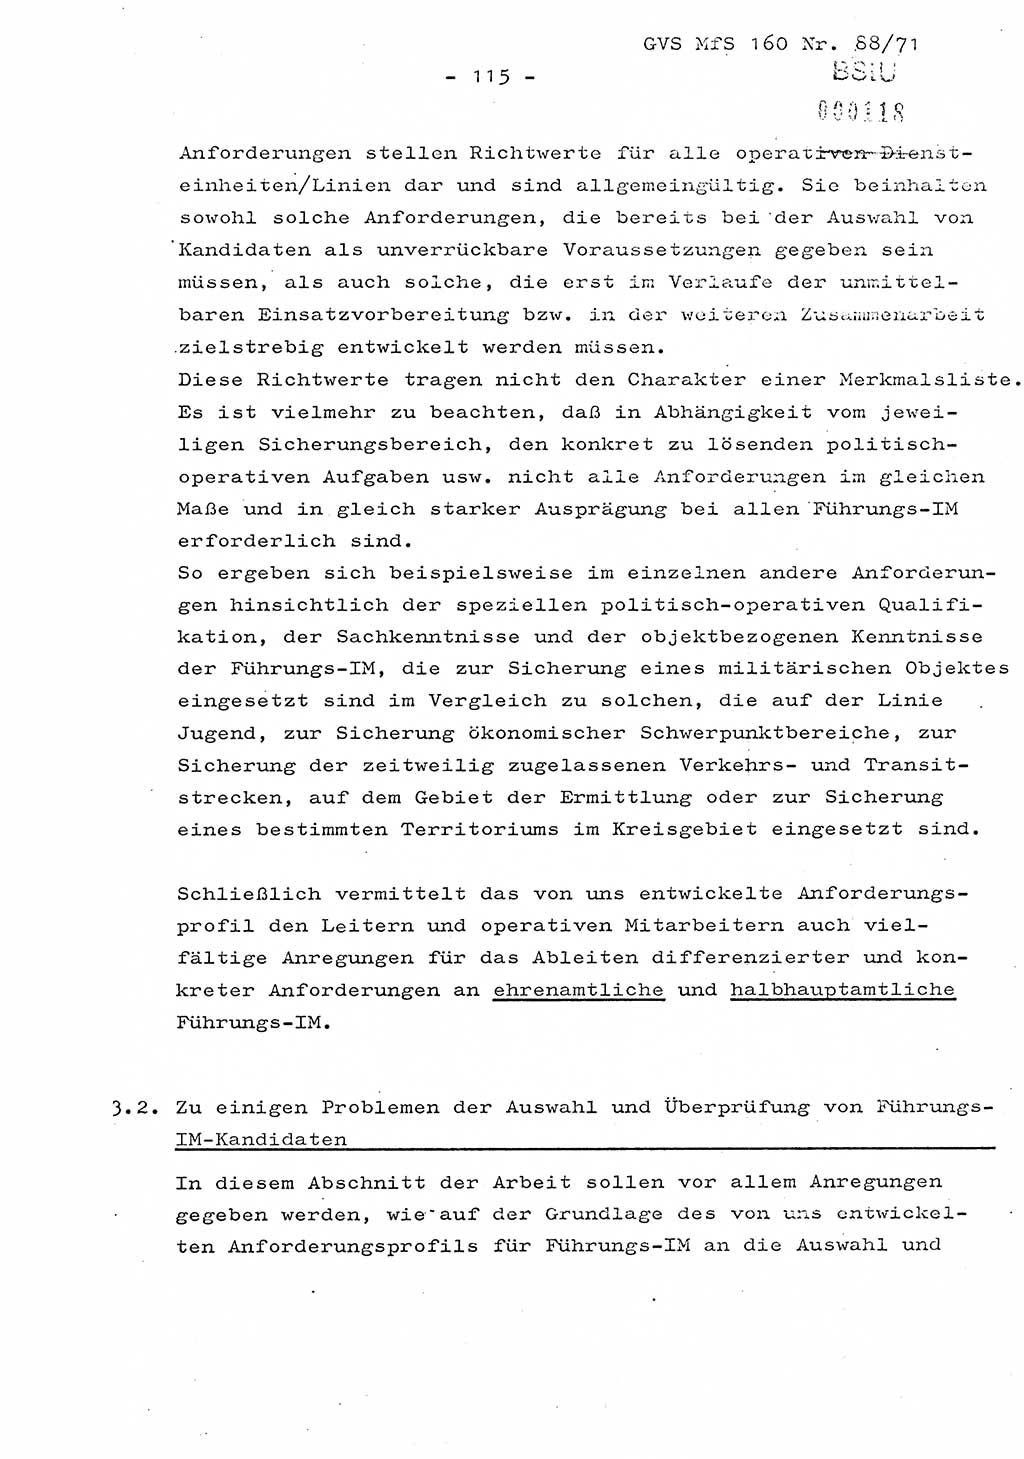 Dissertation Oberstleutnant Josef Schwarz (BV Schwerin), Major Fritz Amm (JHS), Hauptmann Peter Gräßler (JHS), Ministerium für Staatssicherheit (MfS) [Deutsche Demokratische Republik (DDR)], Juristische Hochschule (JHS), Geheime Verschlußsache (GVS) 160-88/71, Potsdam 1972, Seite 115 (Diss. MfS DDR JHS GVS 160-88/71 1972, S. 115)